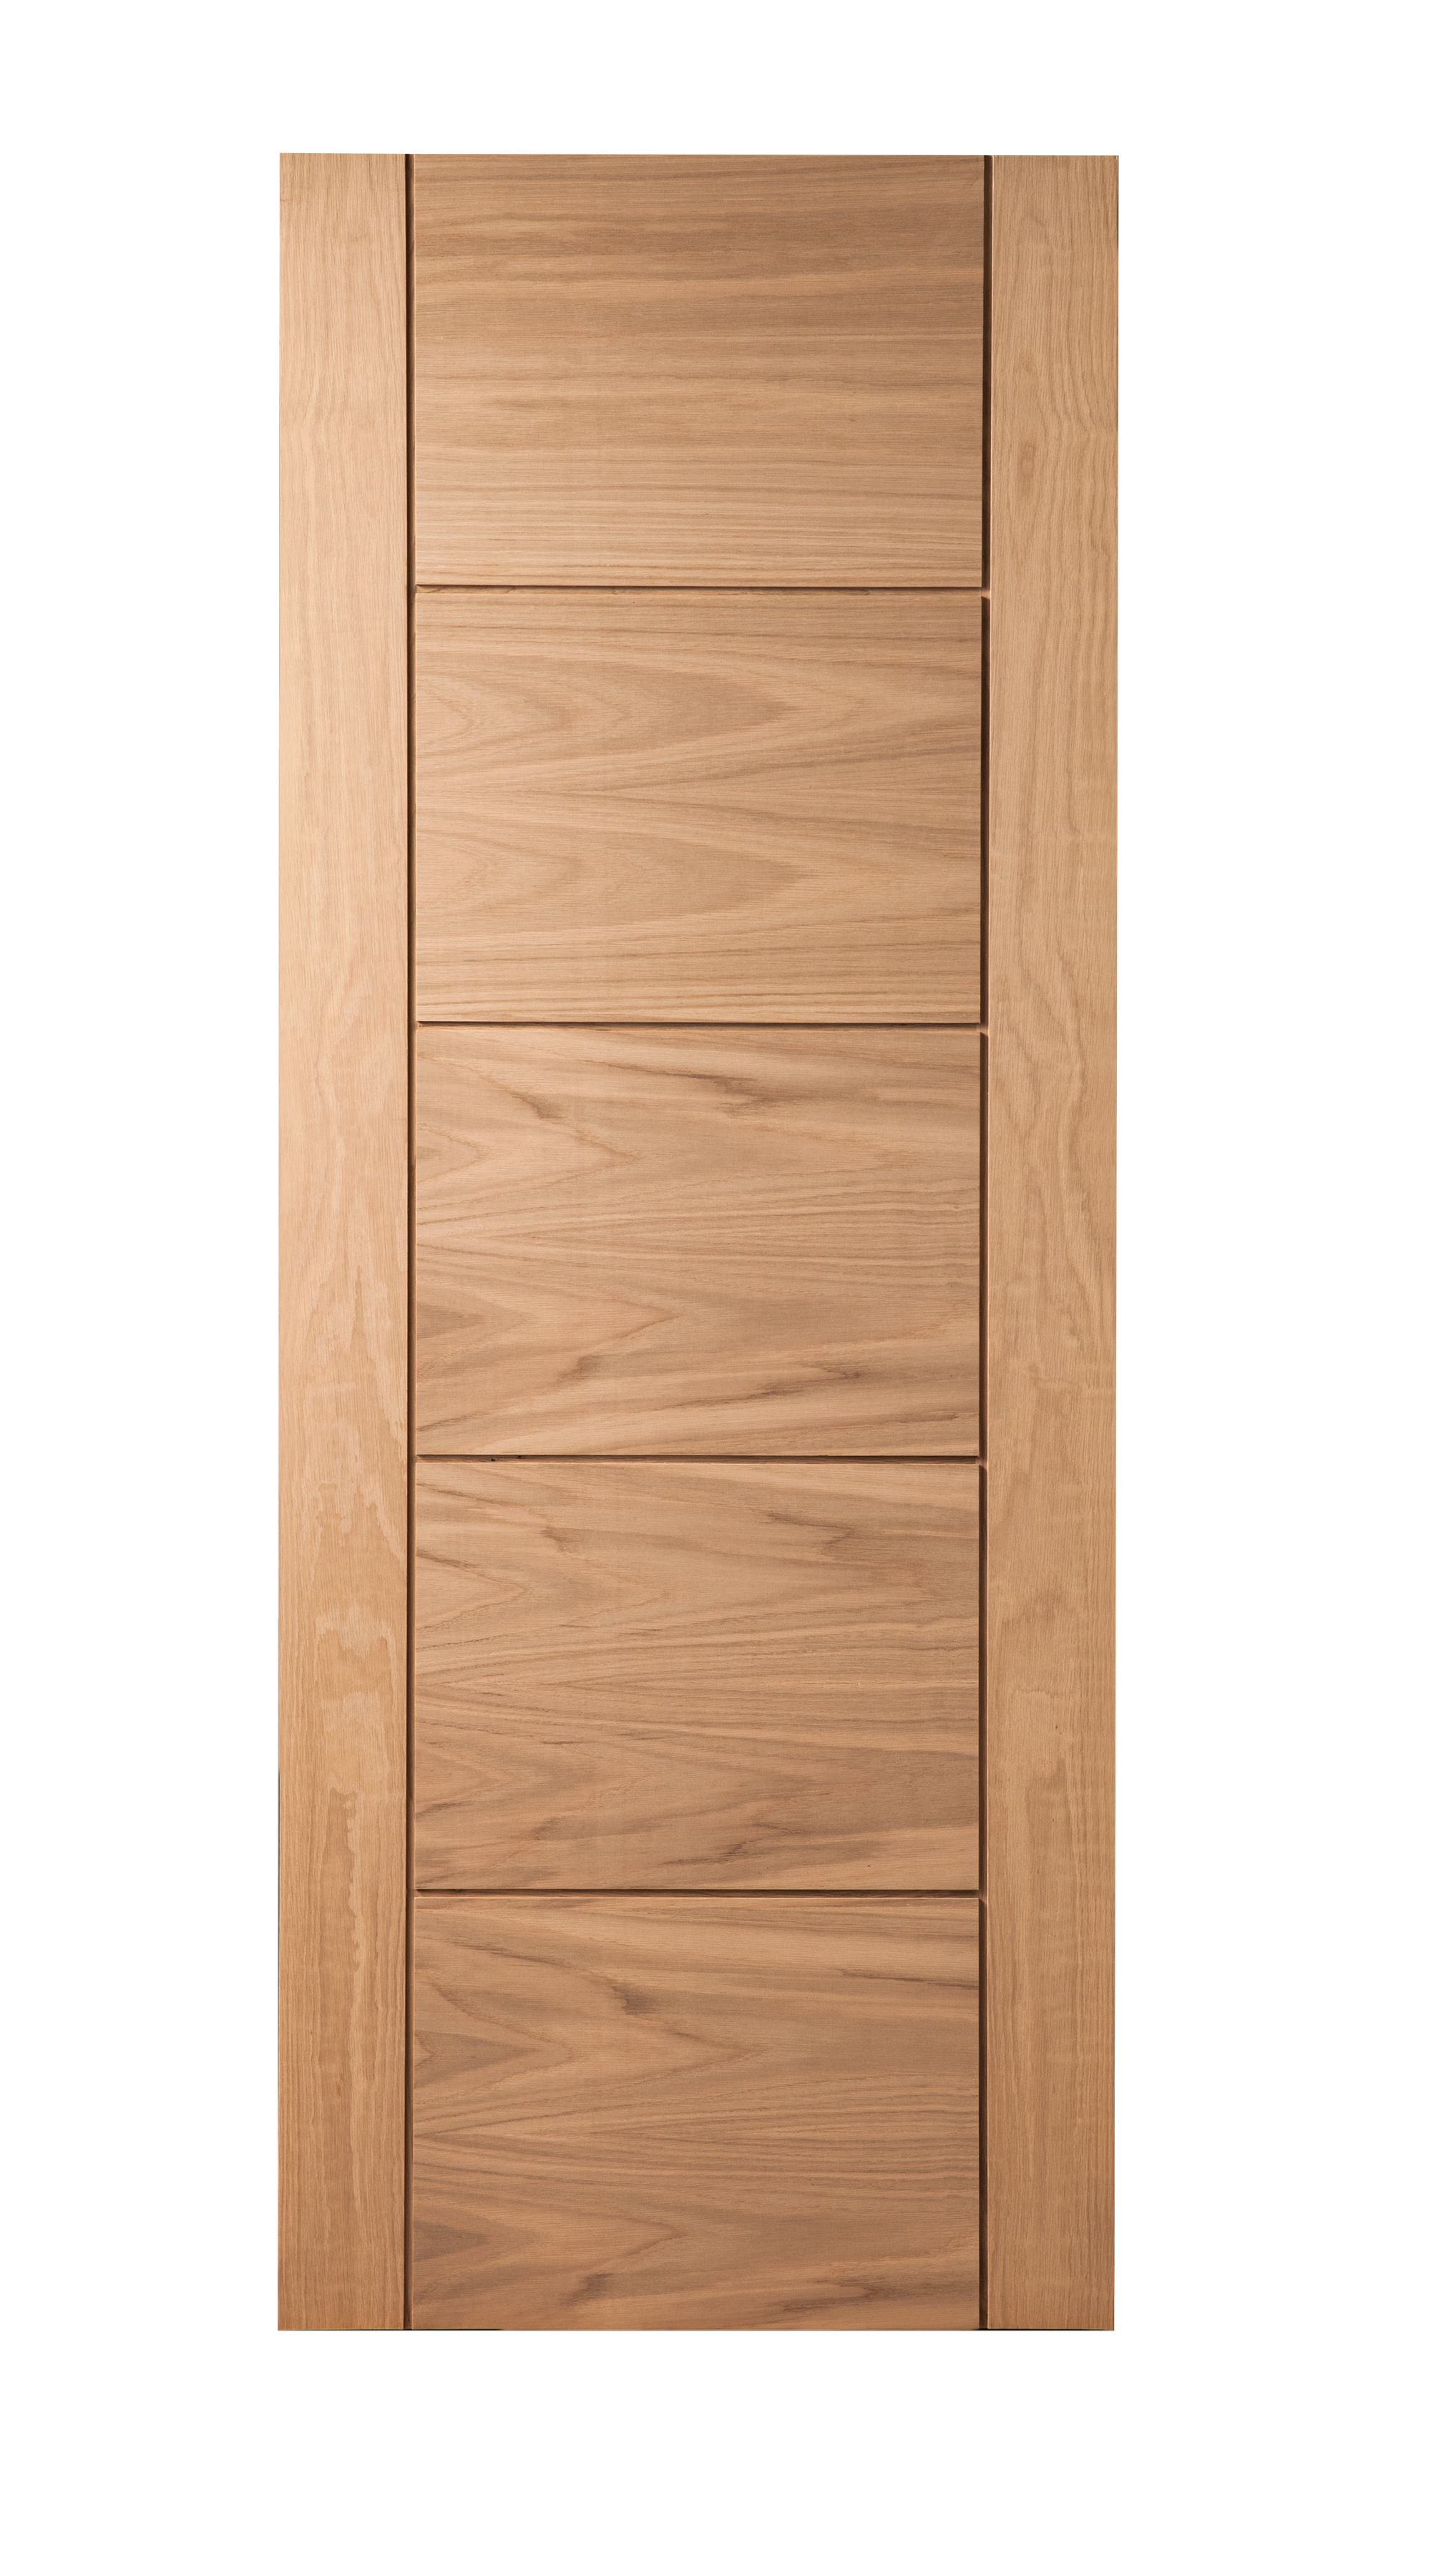 Modernus 5 Panel Oak Internal Door